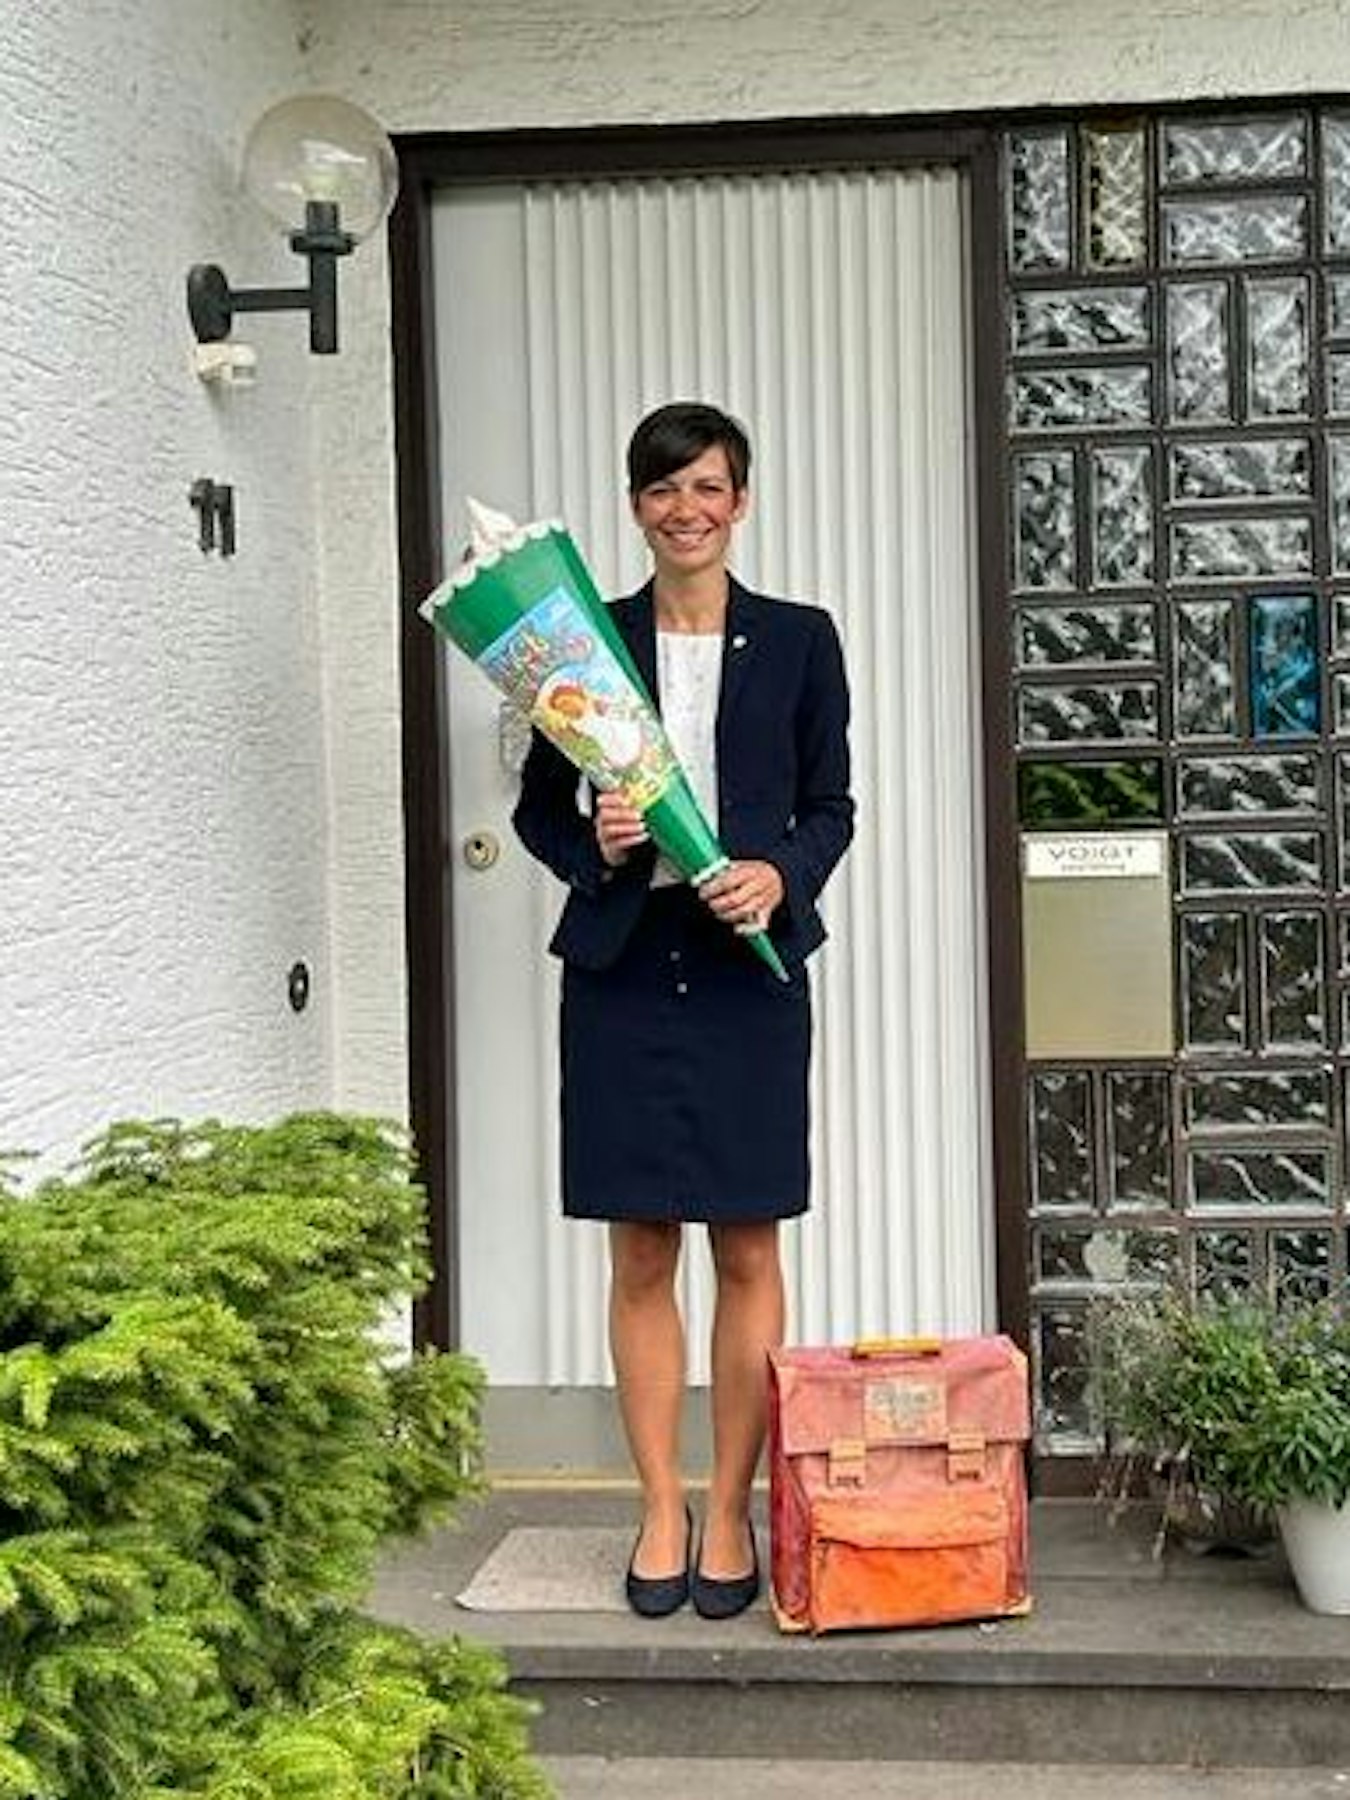 Das Bild zeigt die heutige Bürgermeisterin, Carolin Weitzel, vor ihrem Elternhaus. In der Hand hält sie ihre Schultüte.